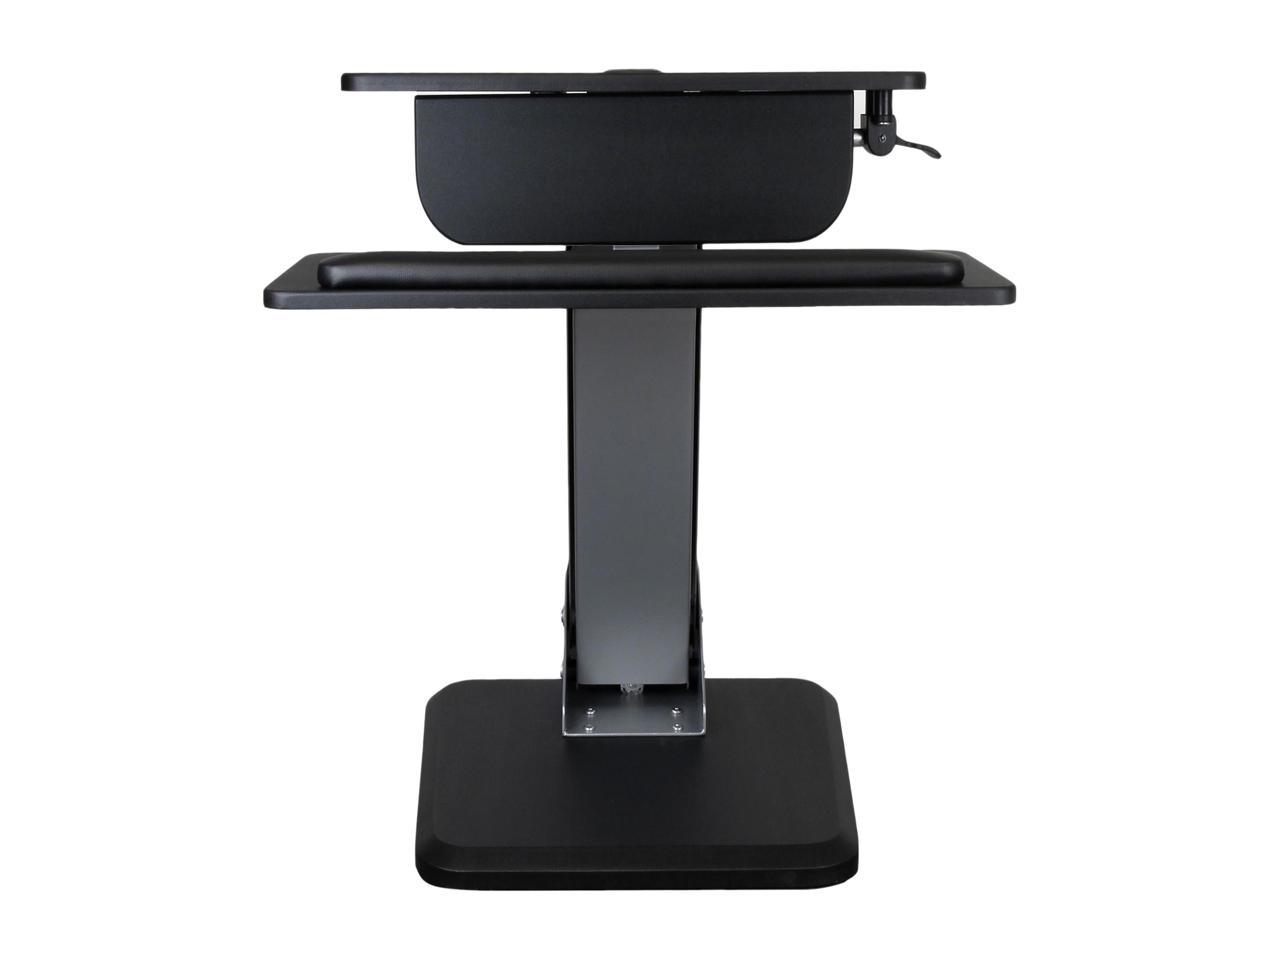 StarTech ARMSTS Height Adjustable Standing Desk Converter - Sit Stand Desk with One-finger Adjustment - Ergonomic Desk